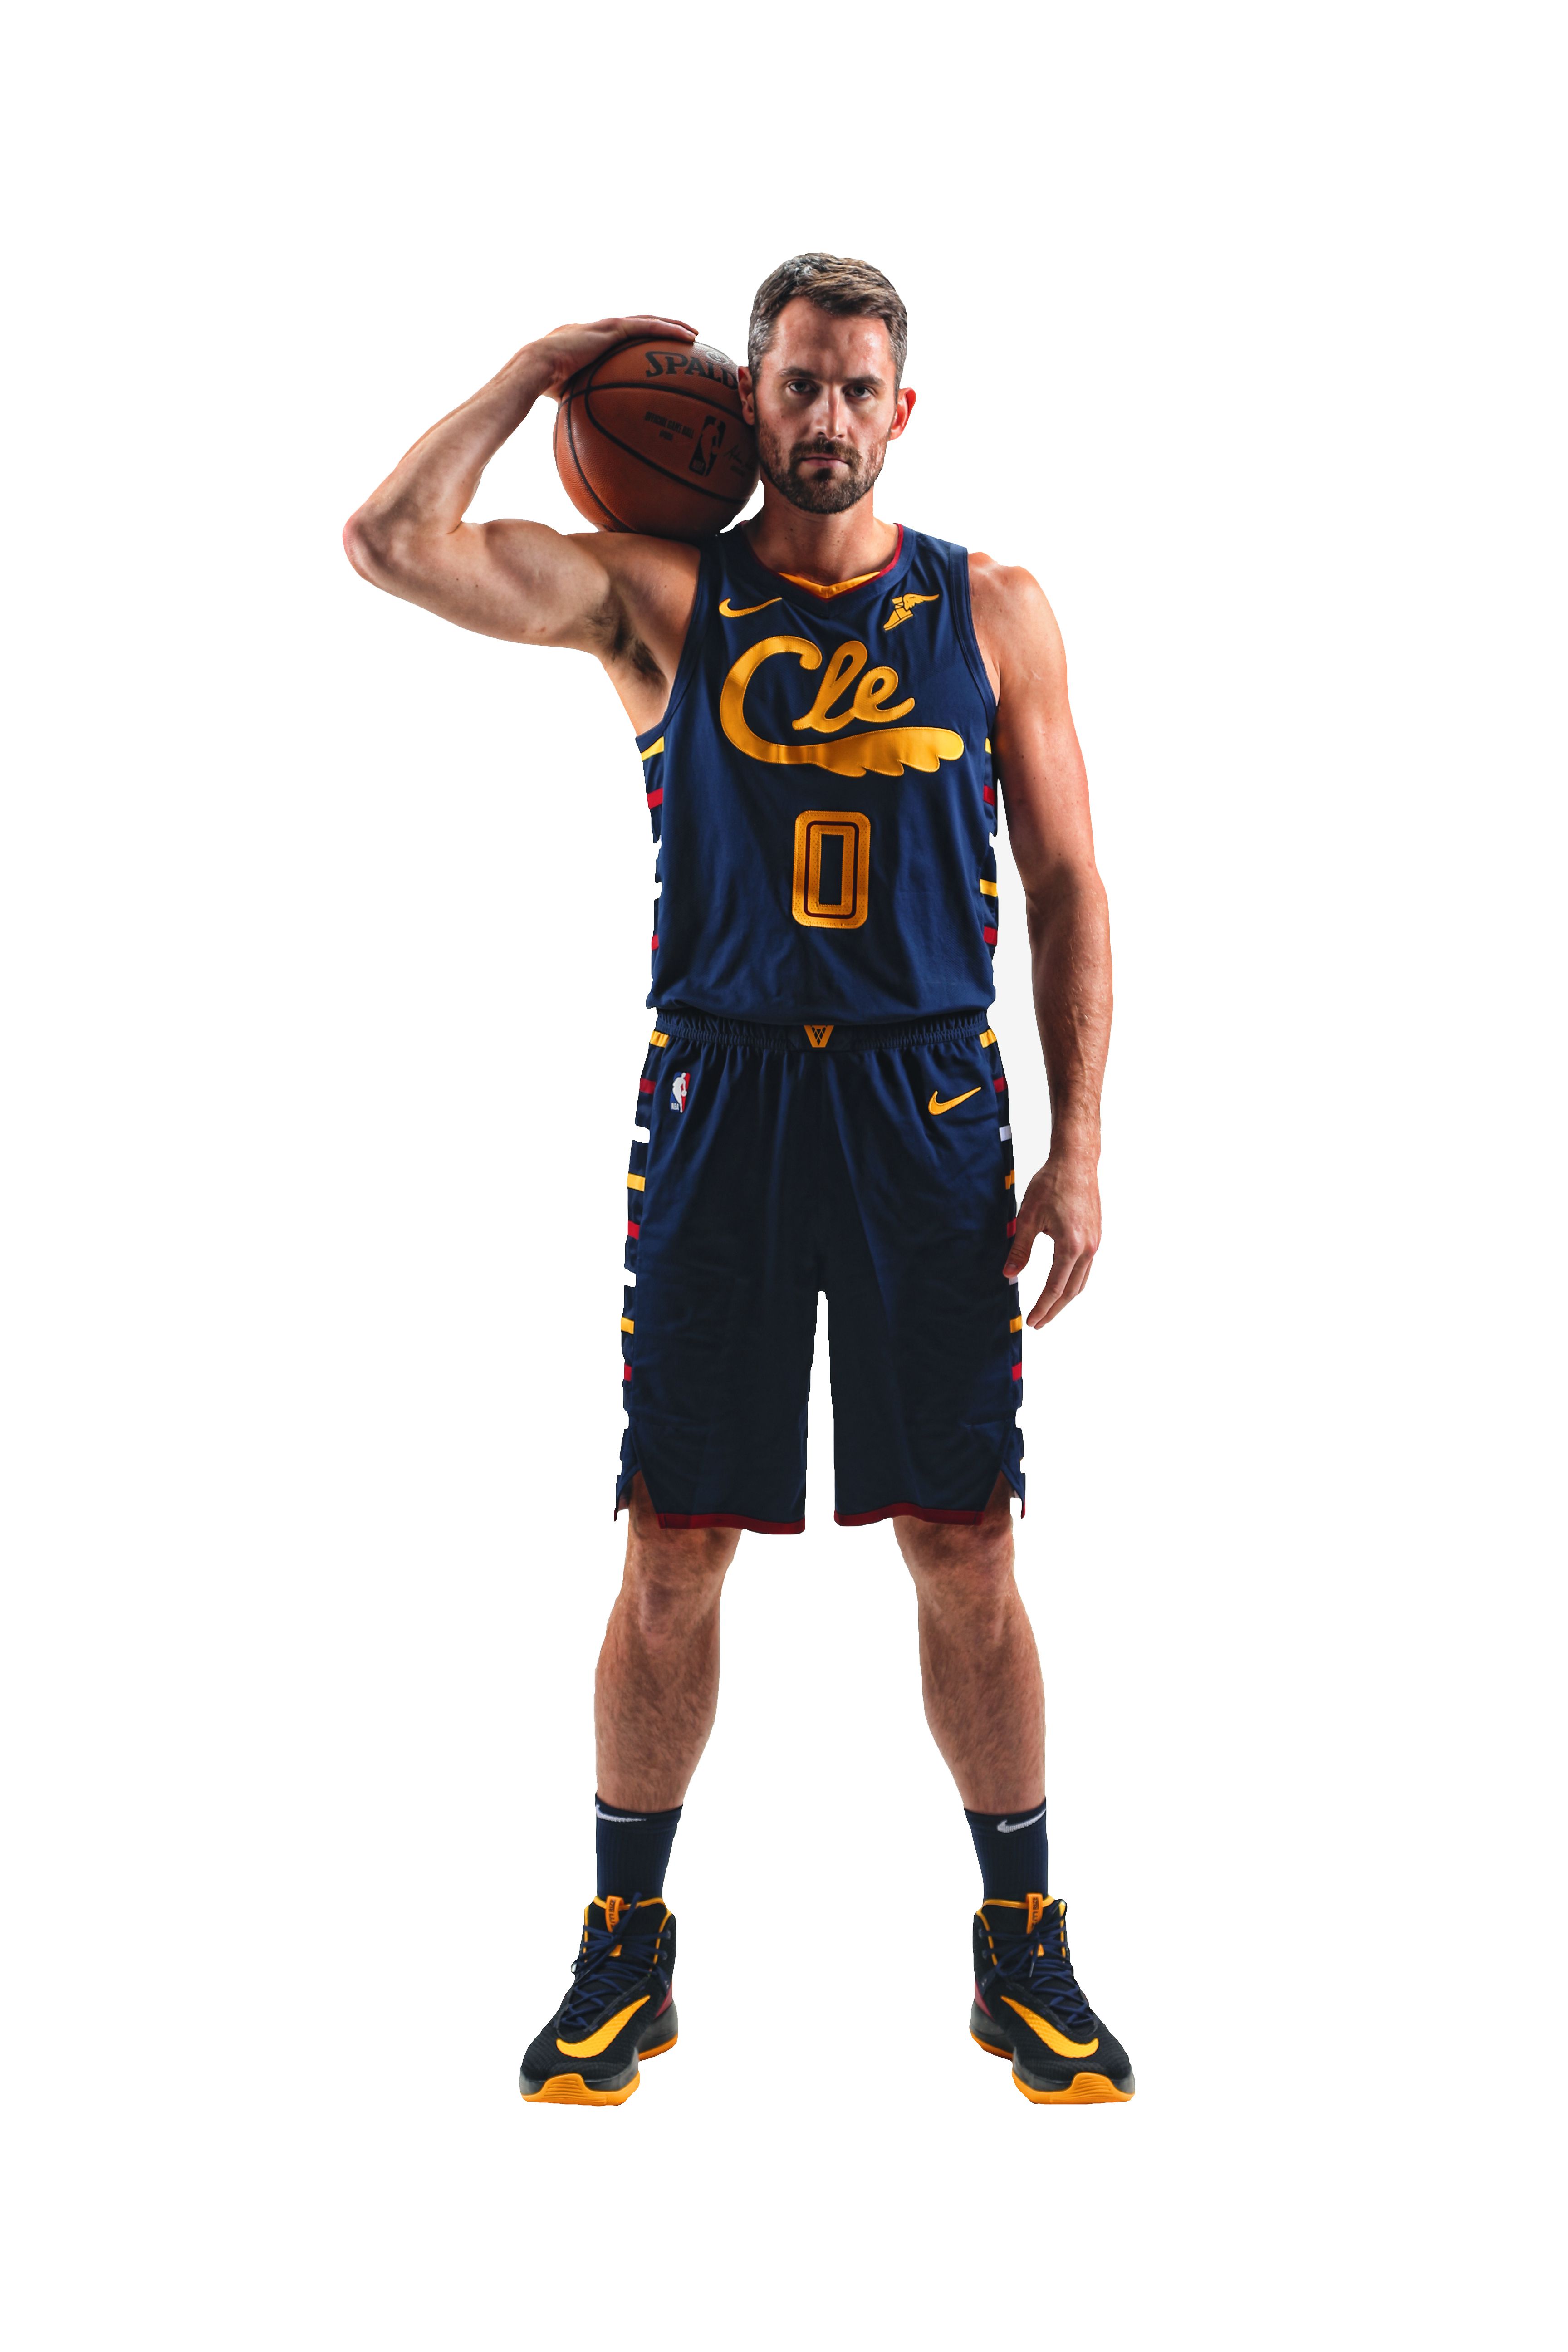 Cleveland Cavaliers unveil 2021-22 City Edition uniforms